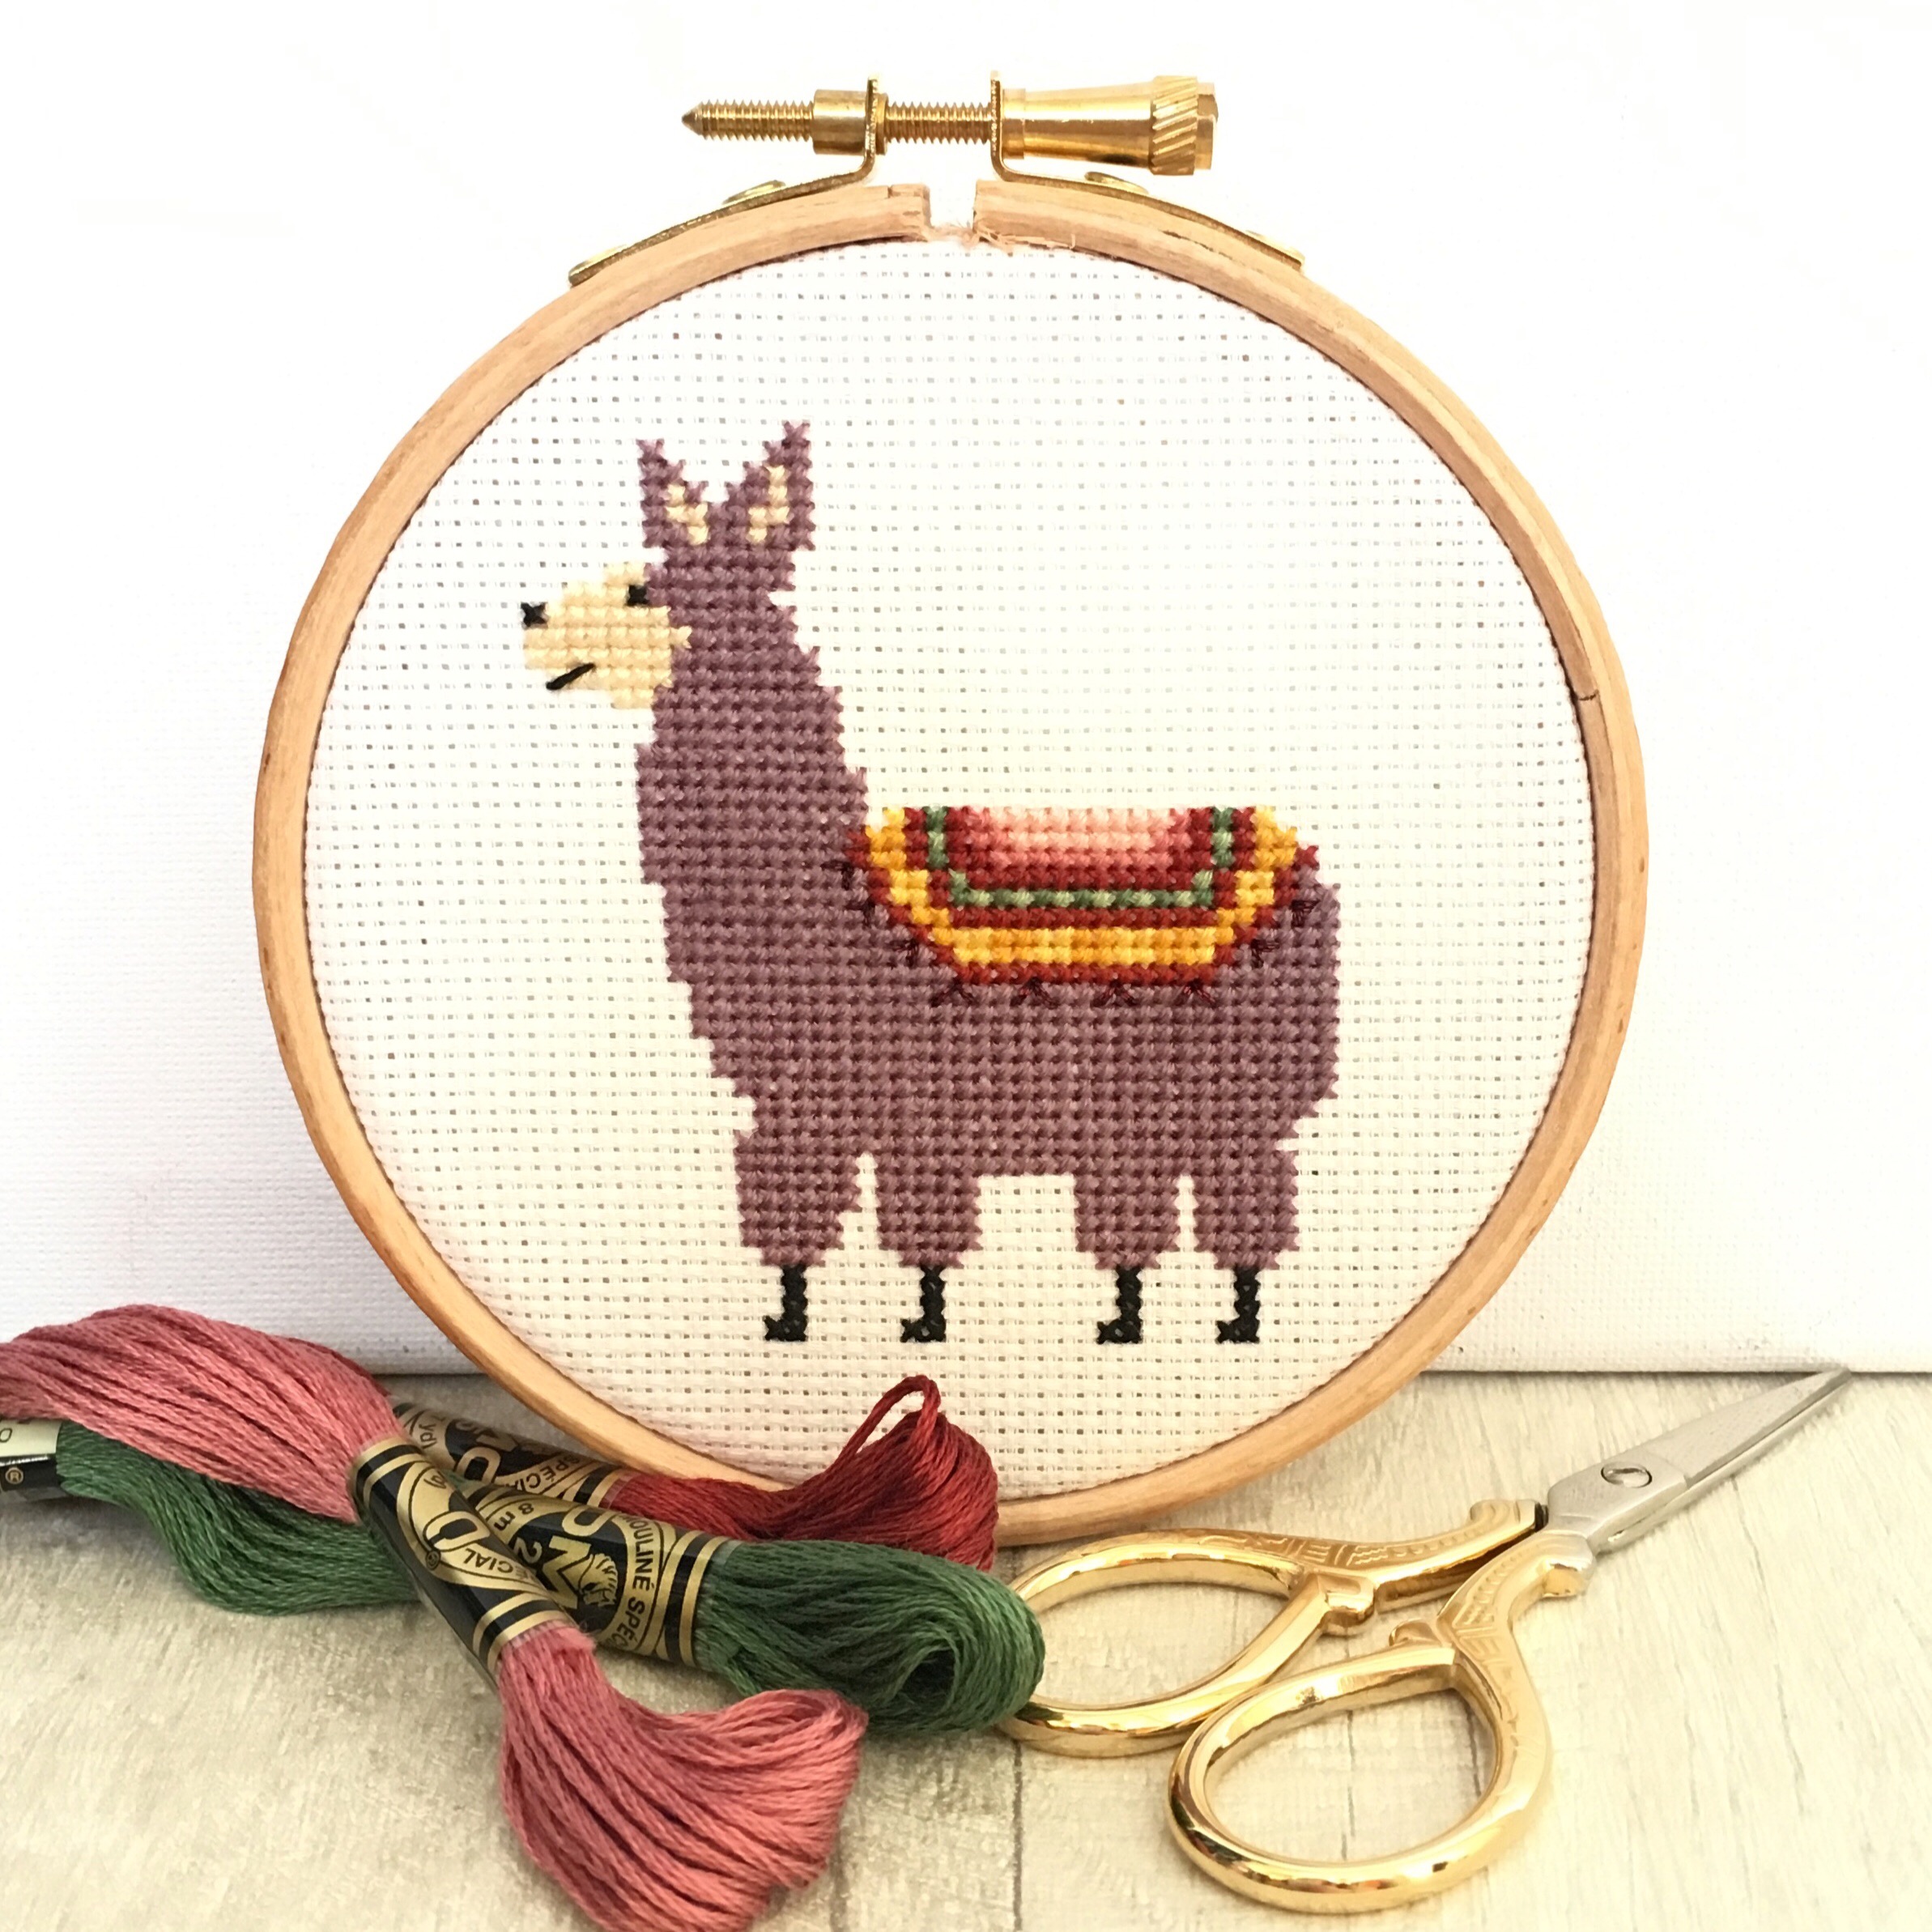 llama-cross-stitch-pattern-cross-stitch-patterns